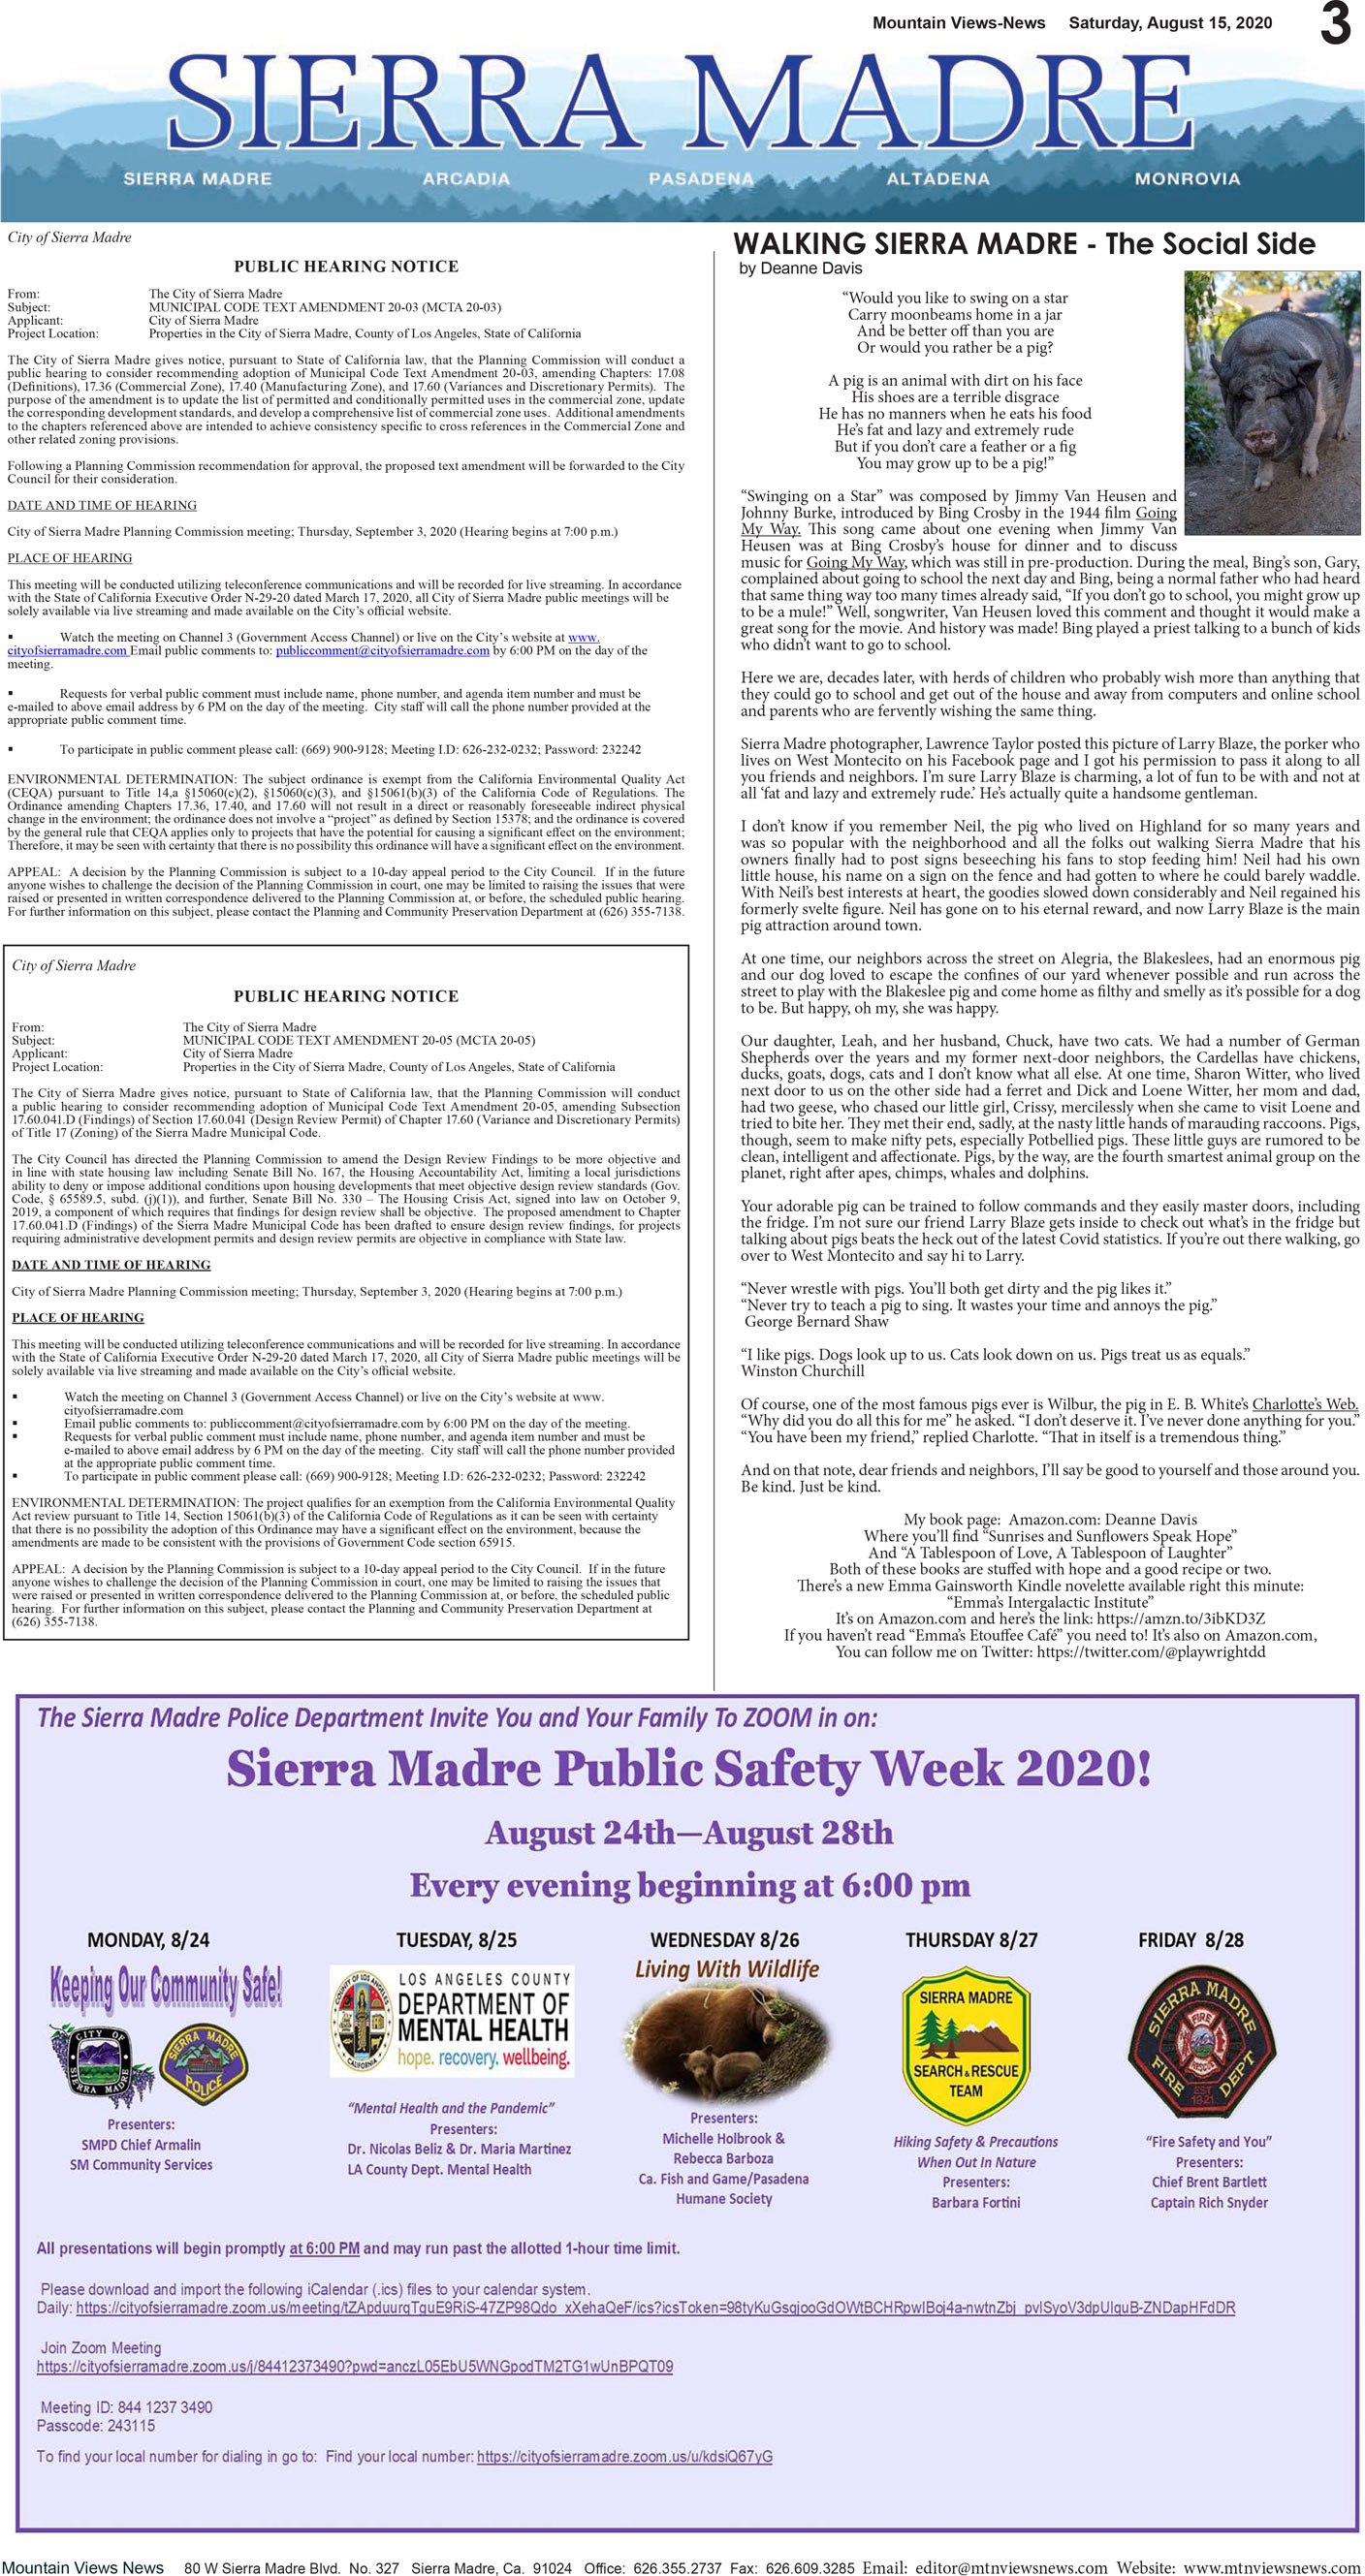 MVNews this week:  Page 3